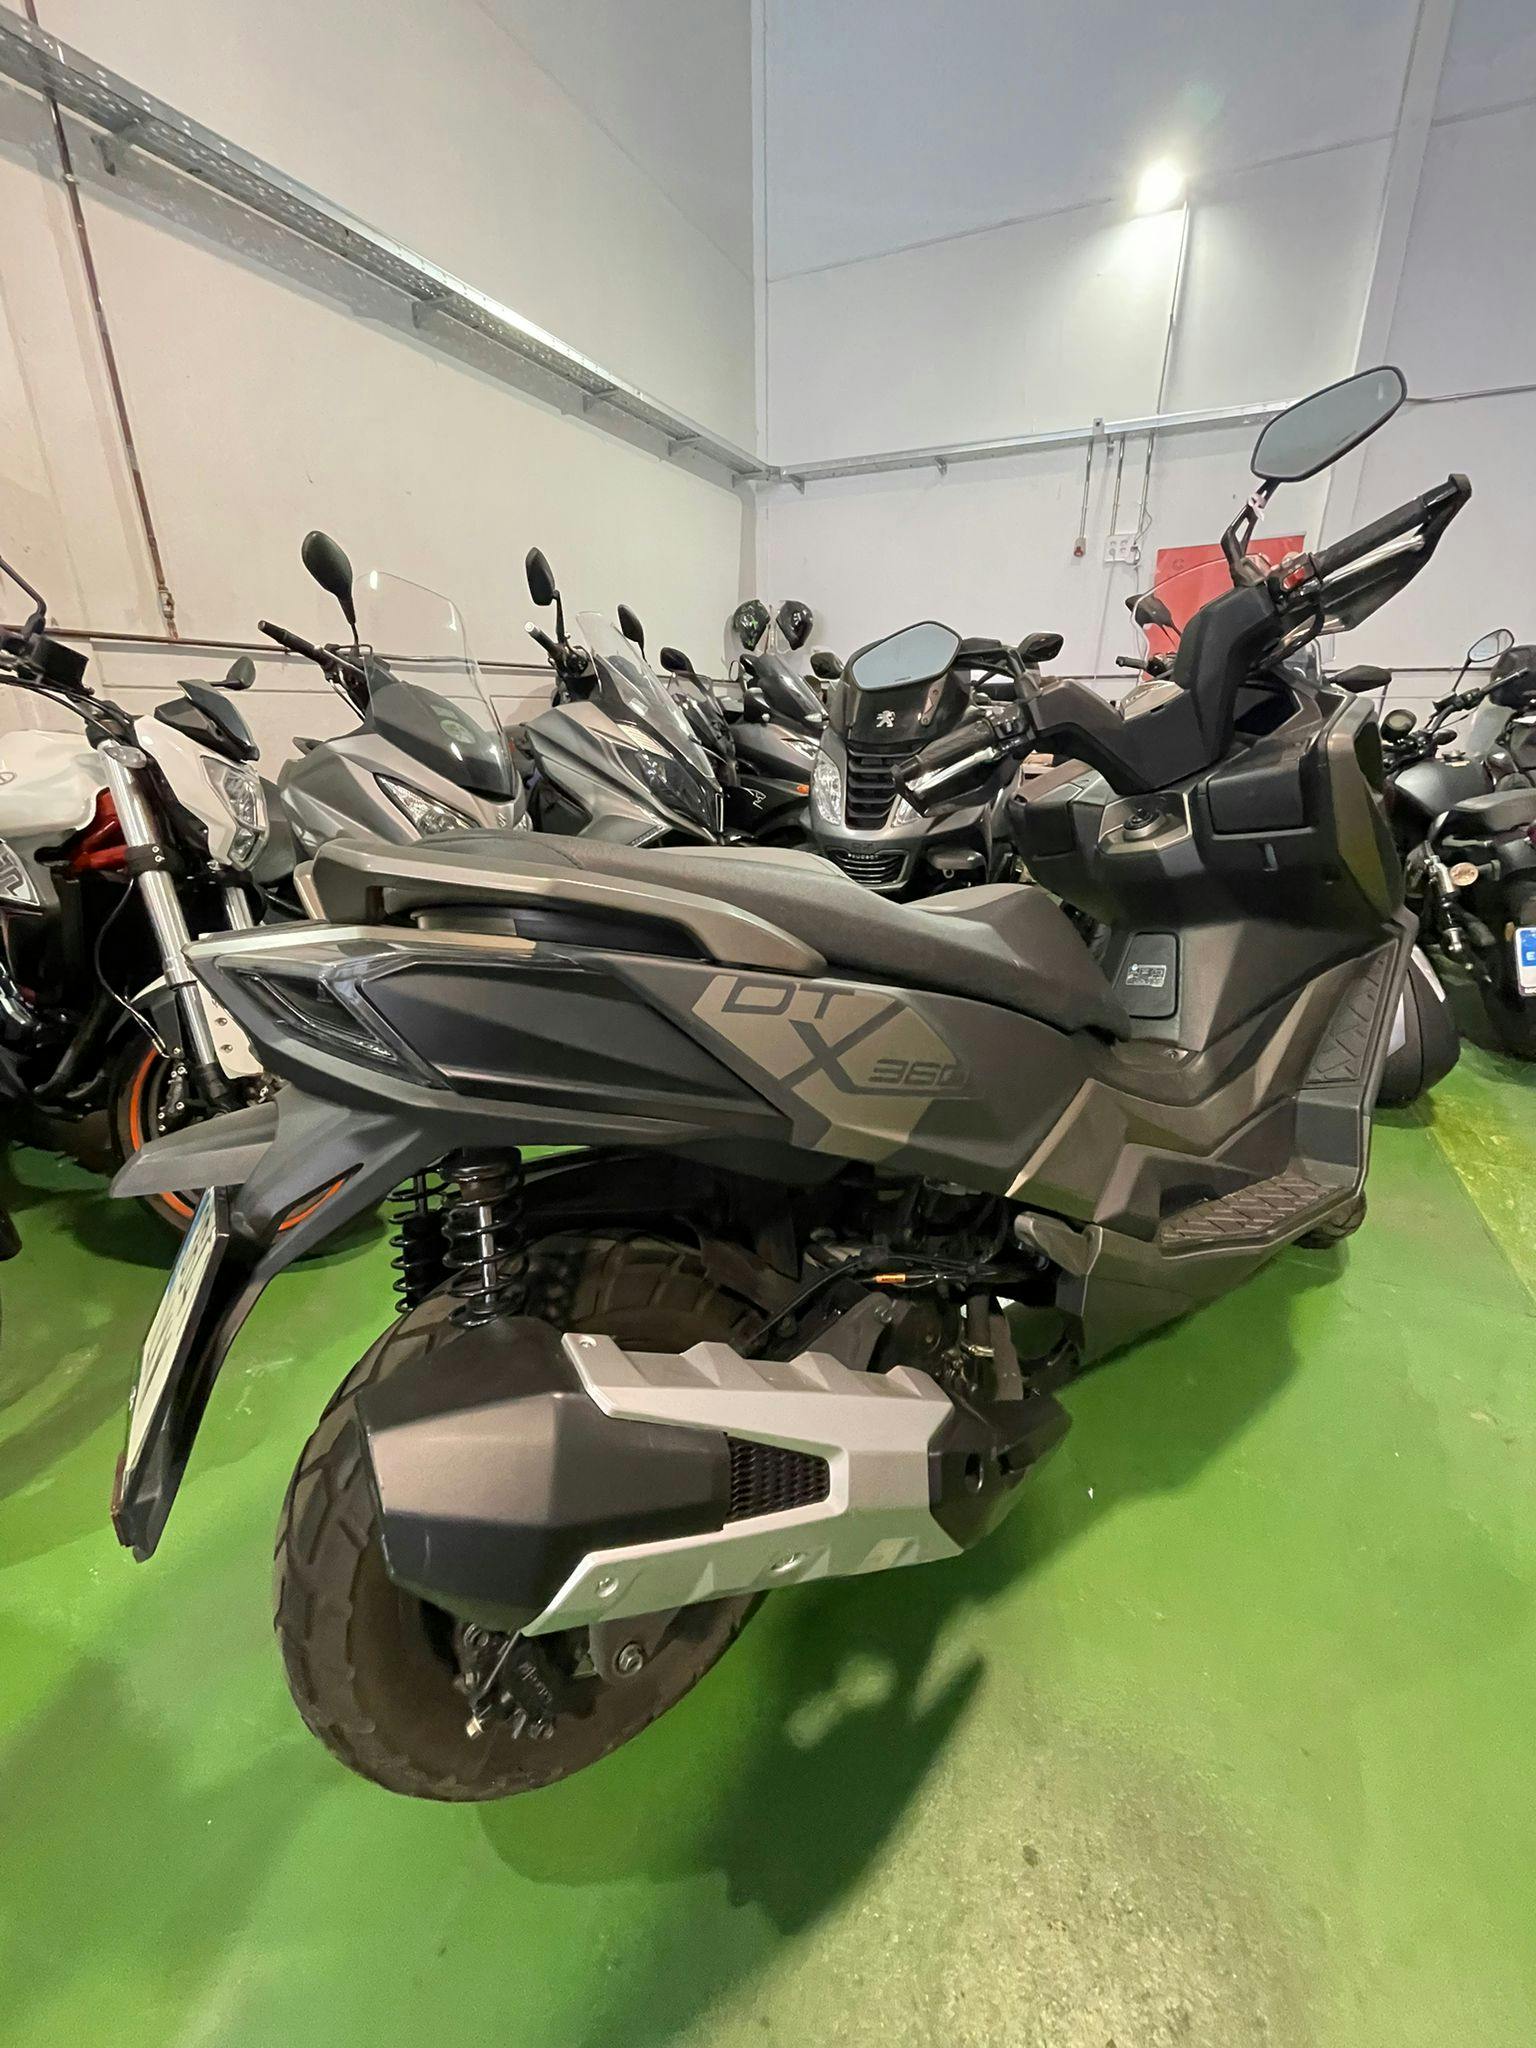 Moto KYMCO DTX 125 de seguna mano del año 2022 en Madrid